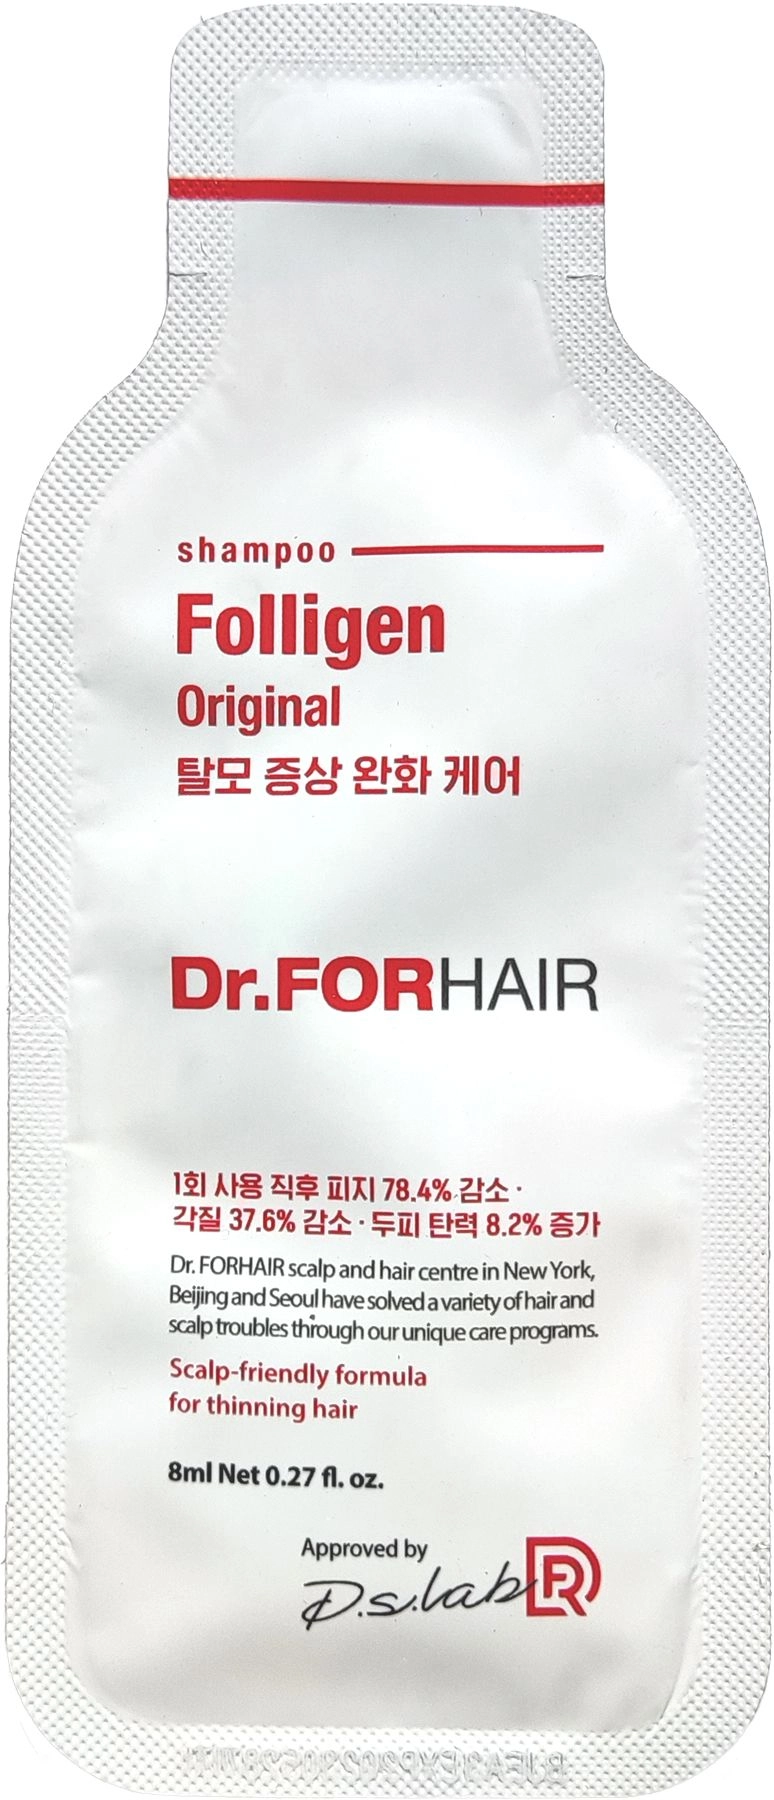 Зміцнюючий шампунь проти випадіння волосся - Dr. ForHair Folligen Original Shampoo, пробник, 8 мл - фото N1